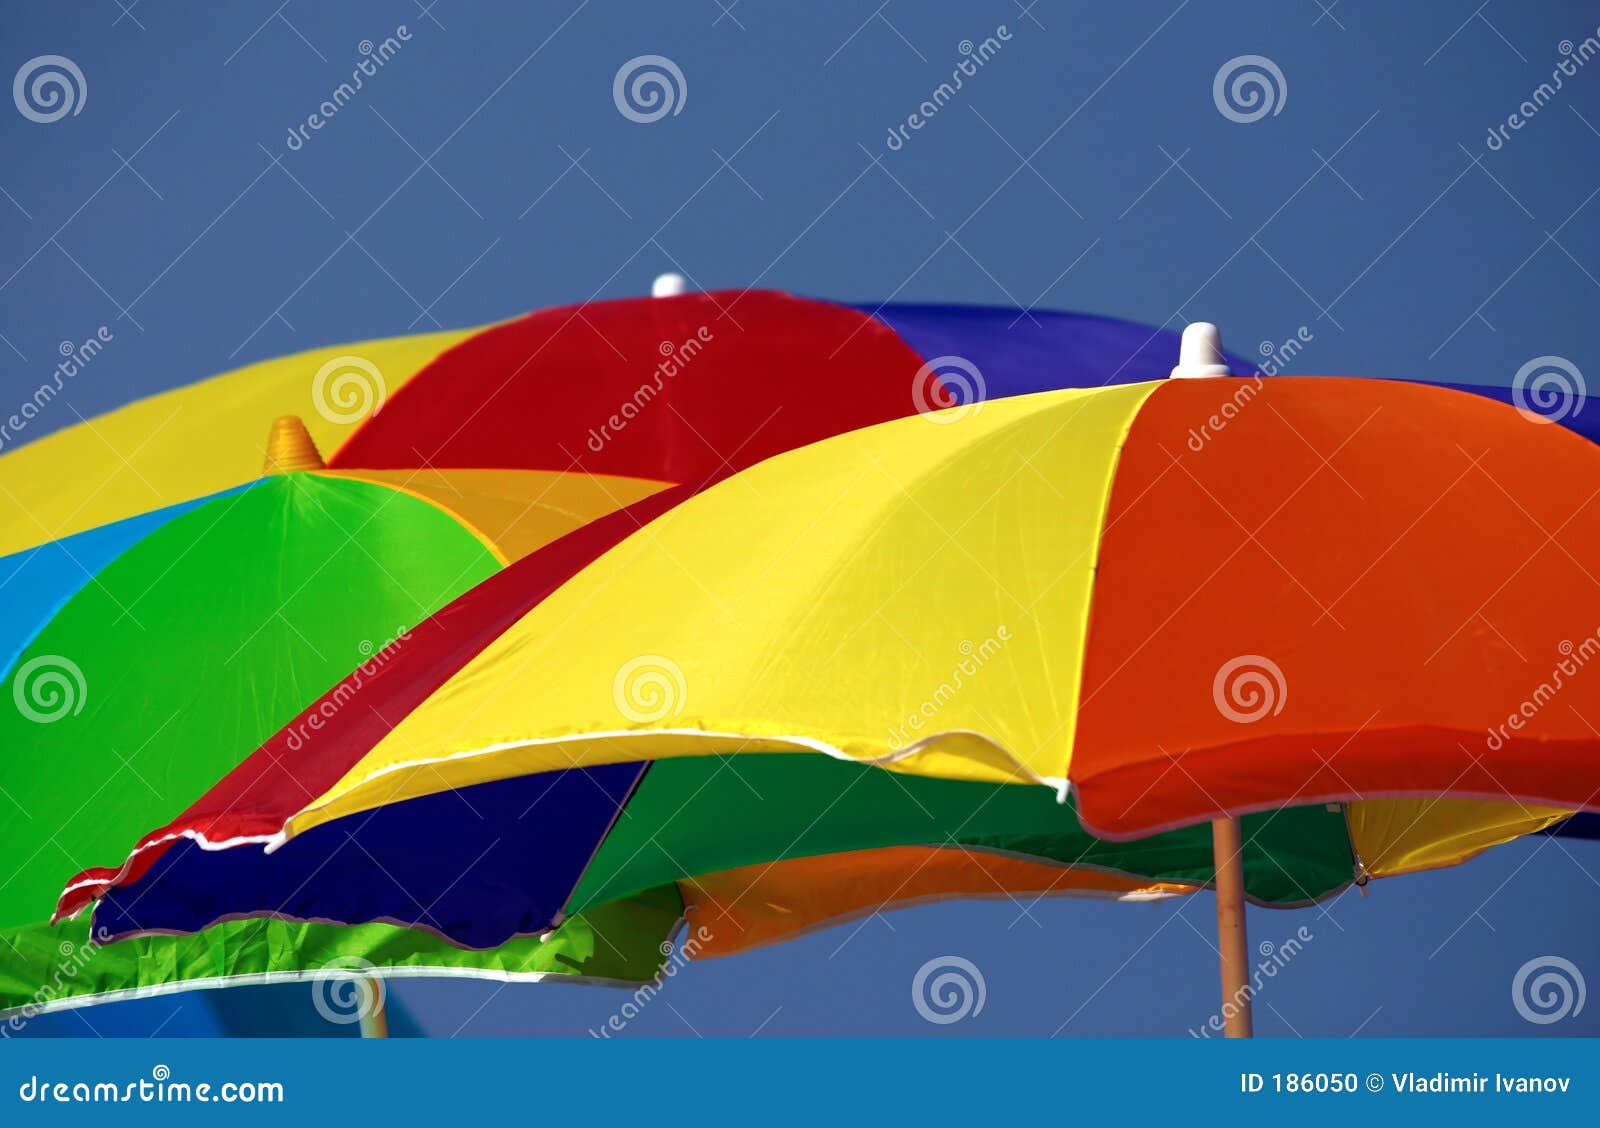 Beach umbrellas stock photo. Image of orange, umbrella - 186050